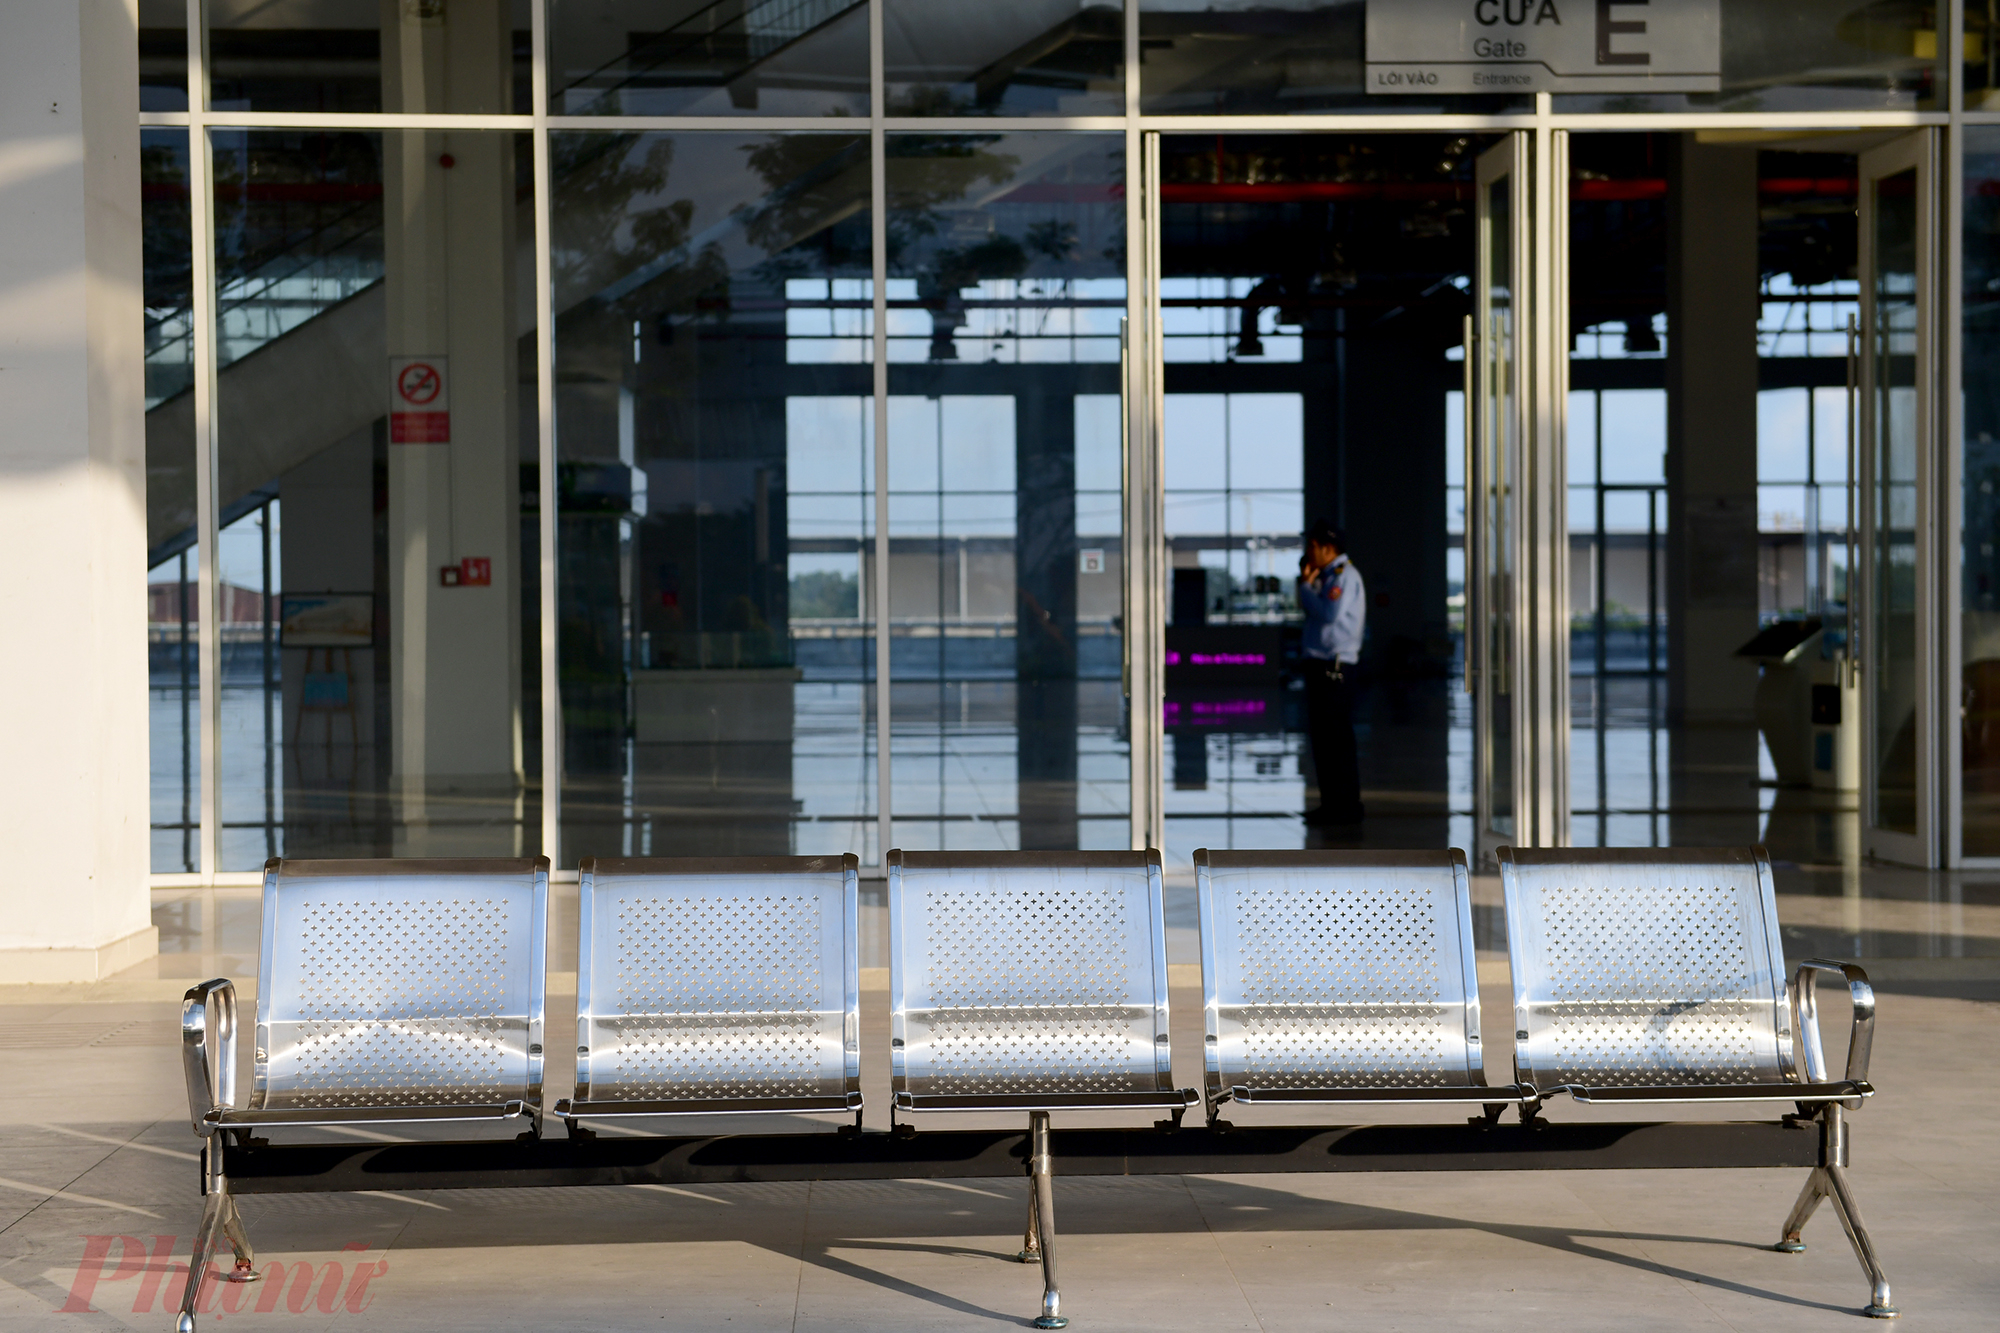 Khu vực phía ngoài hành lang lắp đặt thêm các dãy ghế sắt để hành khách ngồi chờ đợi xe.